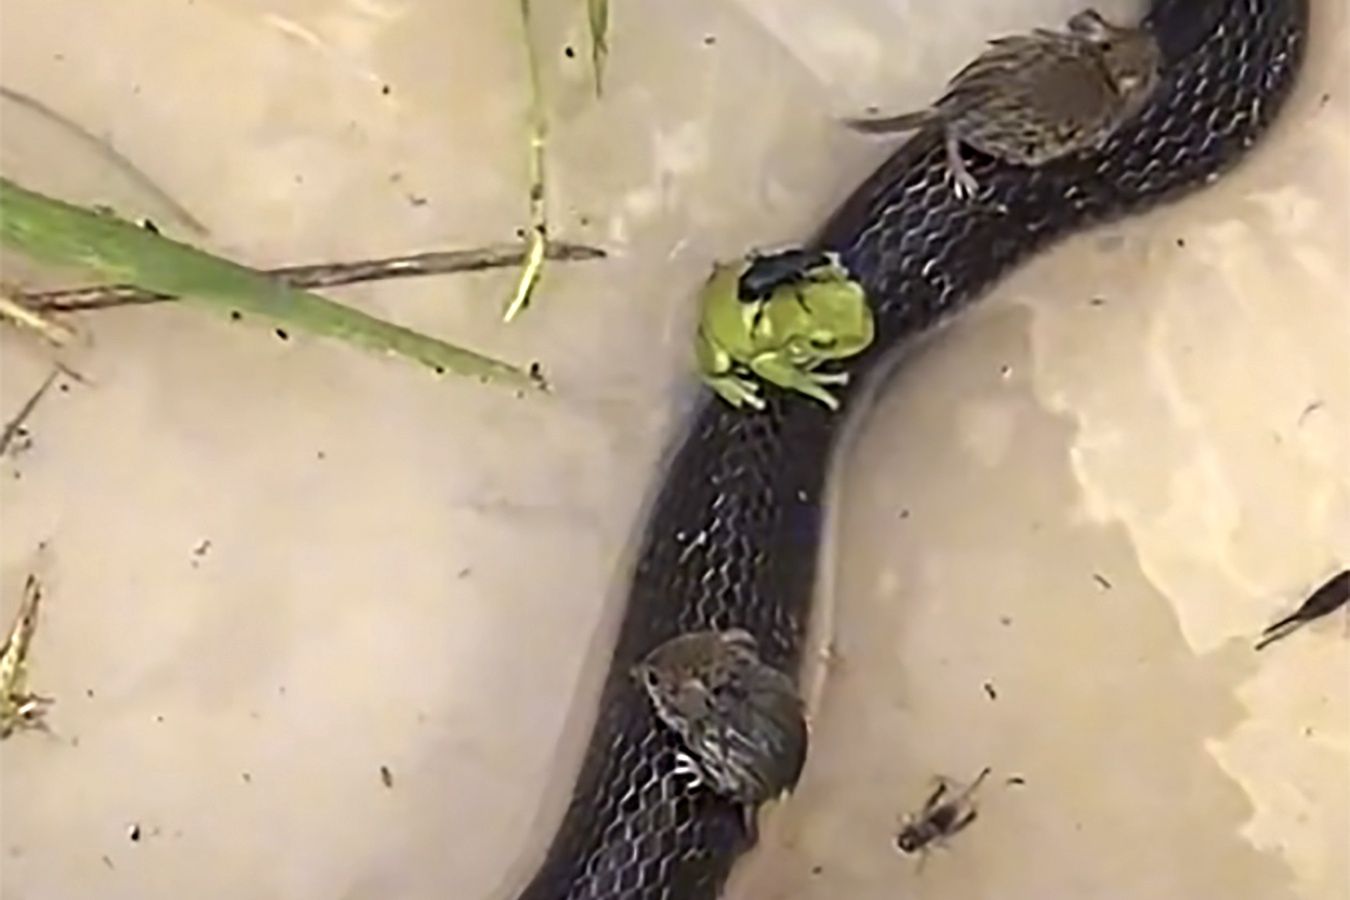 Myszy i żaby wskakują na grzbiet węża. Nagranie jest hitem sieci